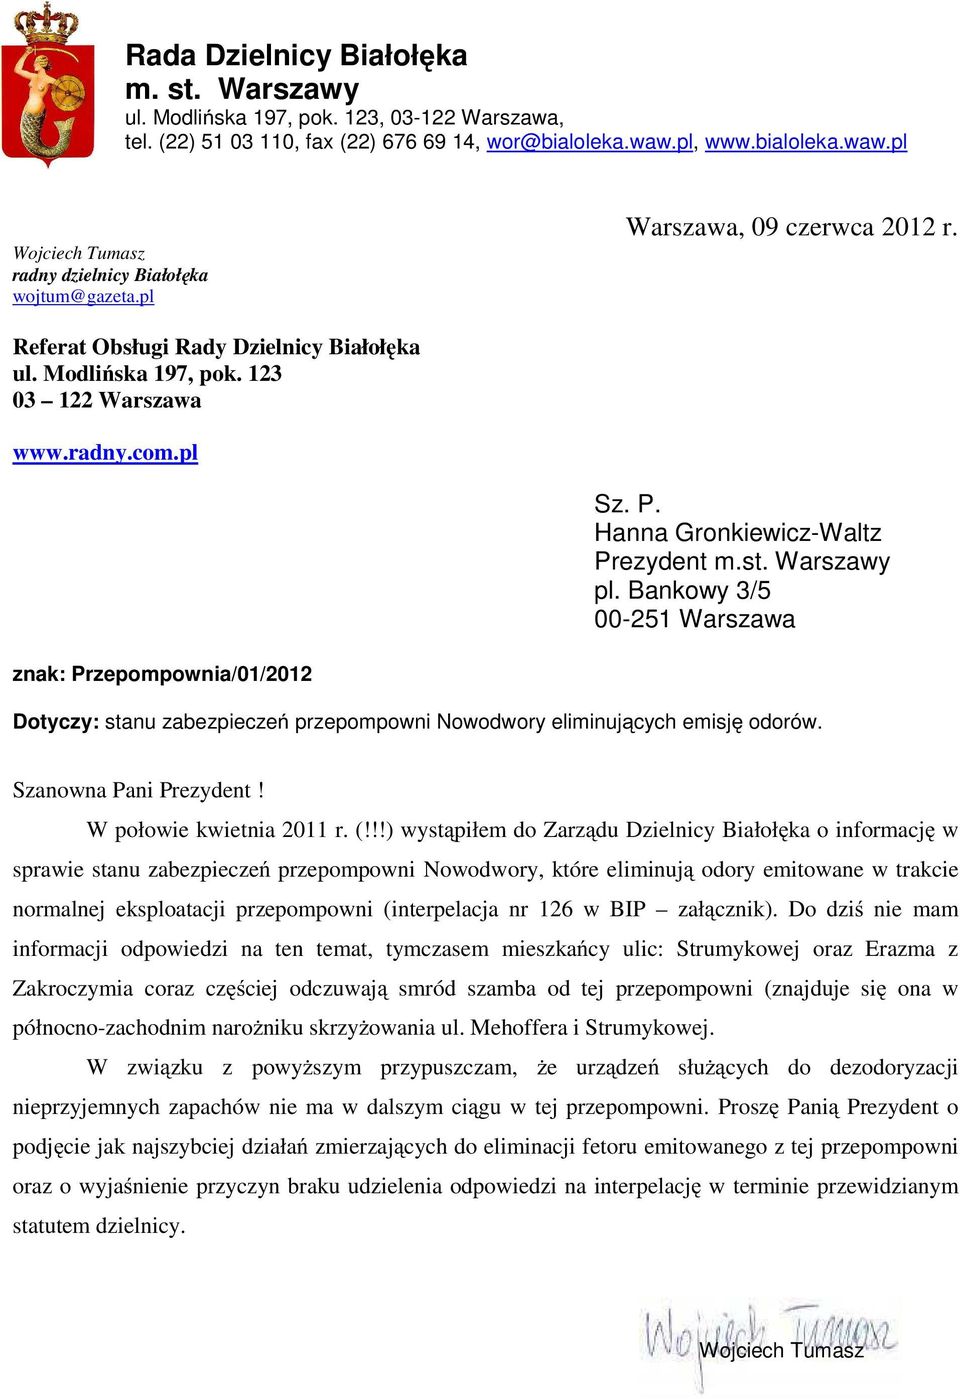 123 03 122 Warszawa www.radny.com.pl Sz. P. Hanna Gronkiewicz-Waltz Prezydent m.st. Warszawy pl.